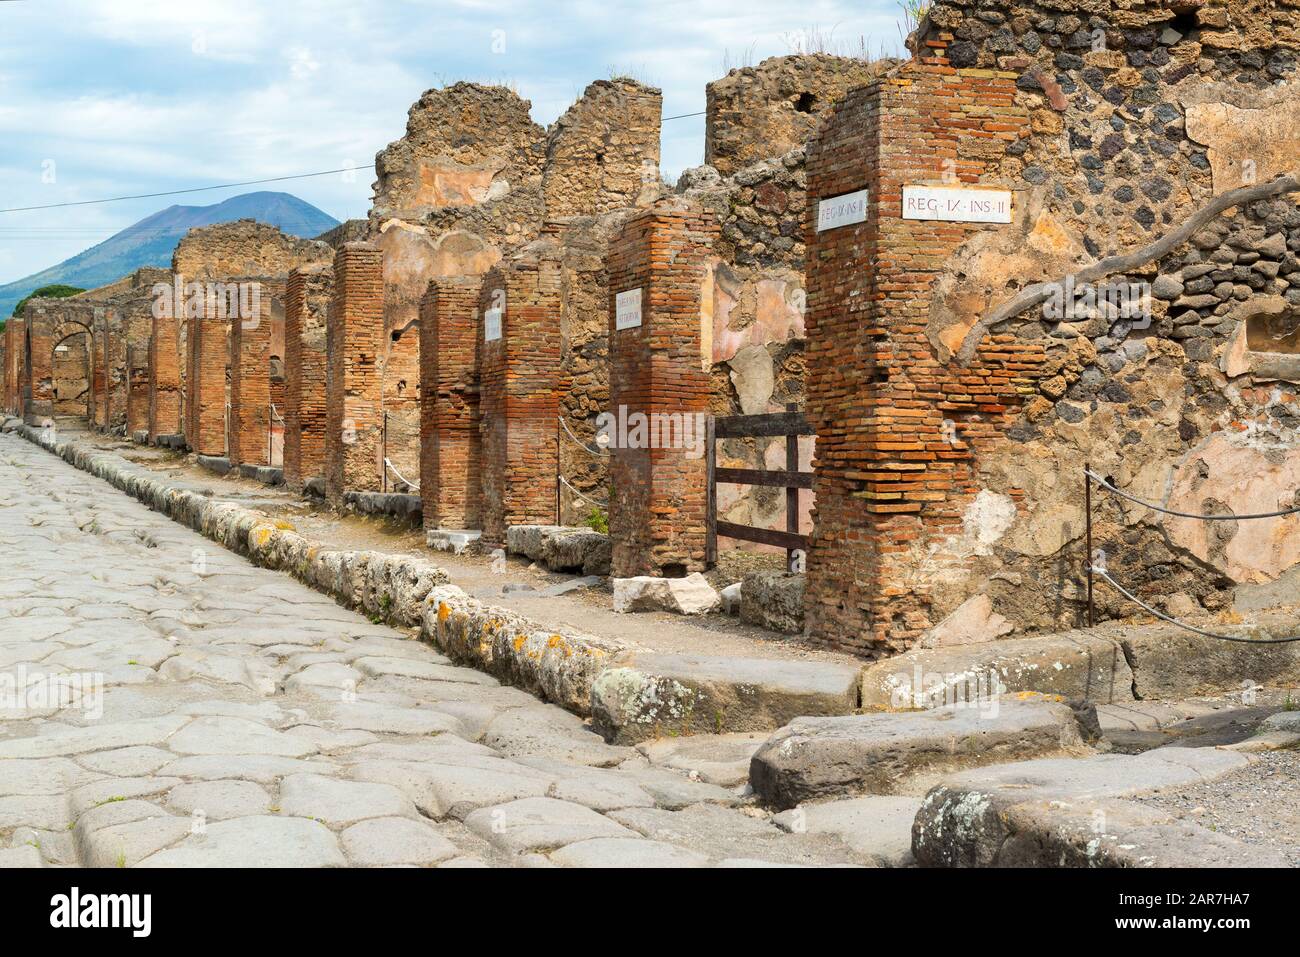 Straße in der antiken römischen Stadt Pompeji. Pompeji ist eine antike römische Stadt, die durch den Ausbruch des Vesuvs im 1. Jahrhundert starb. Stockfoto